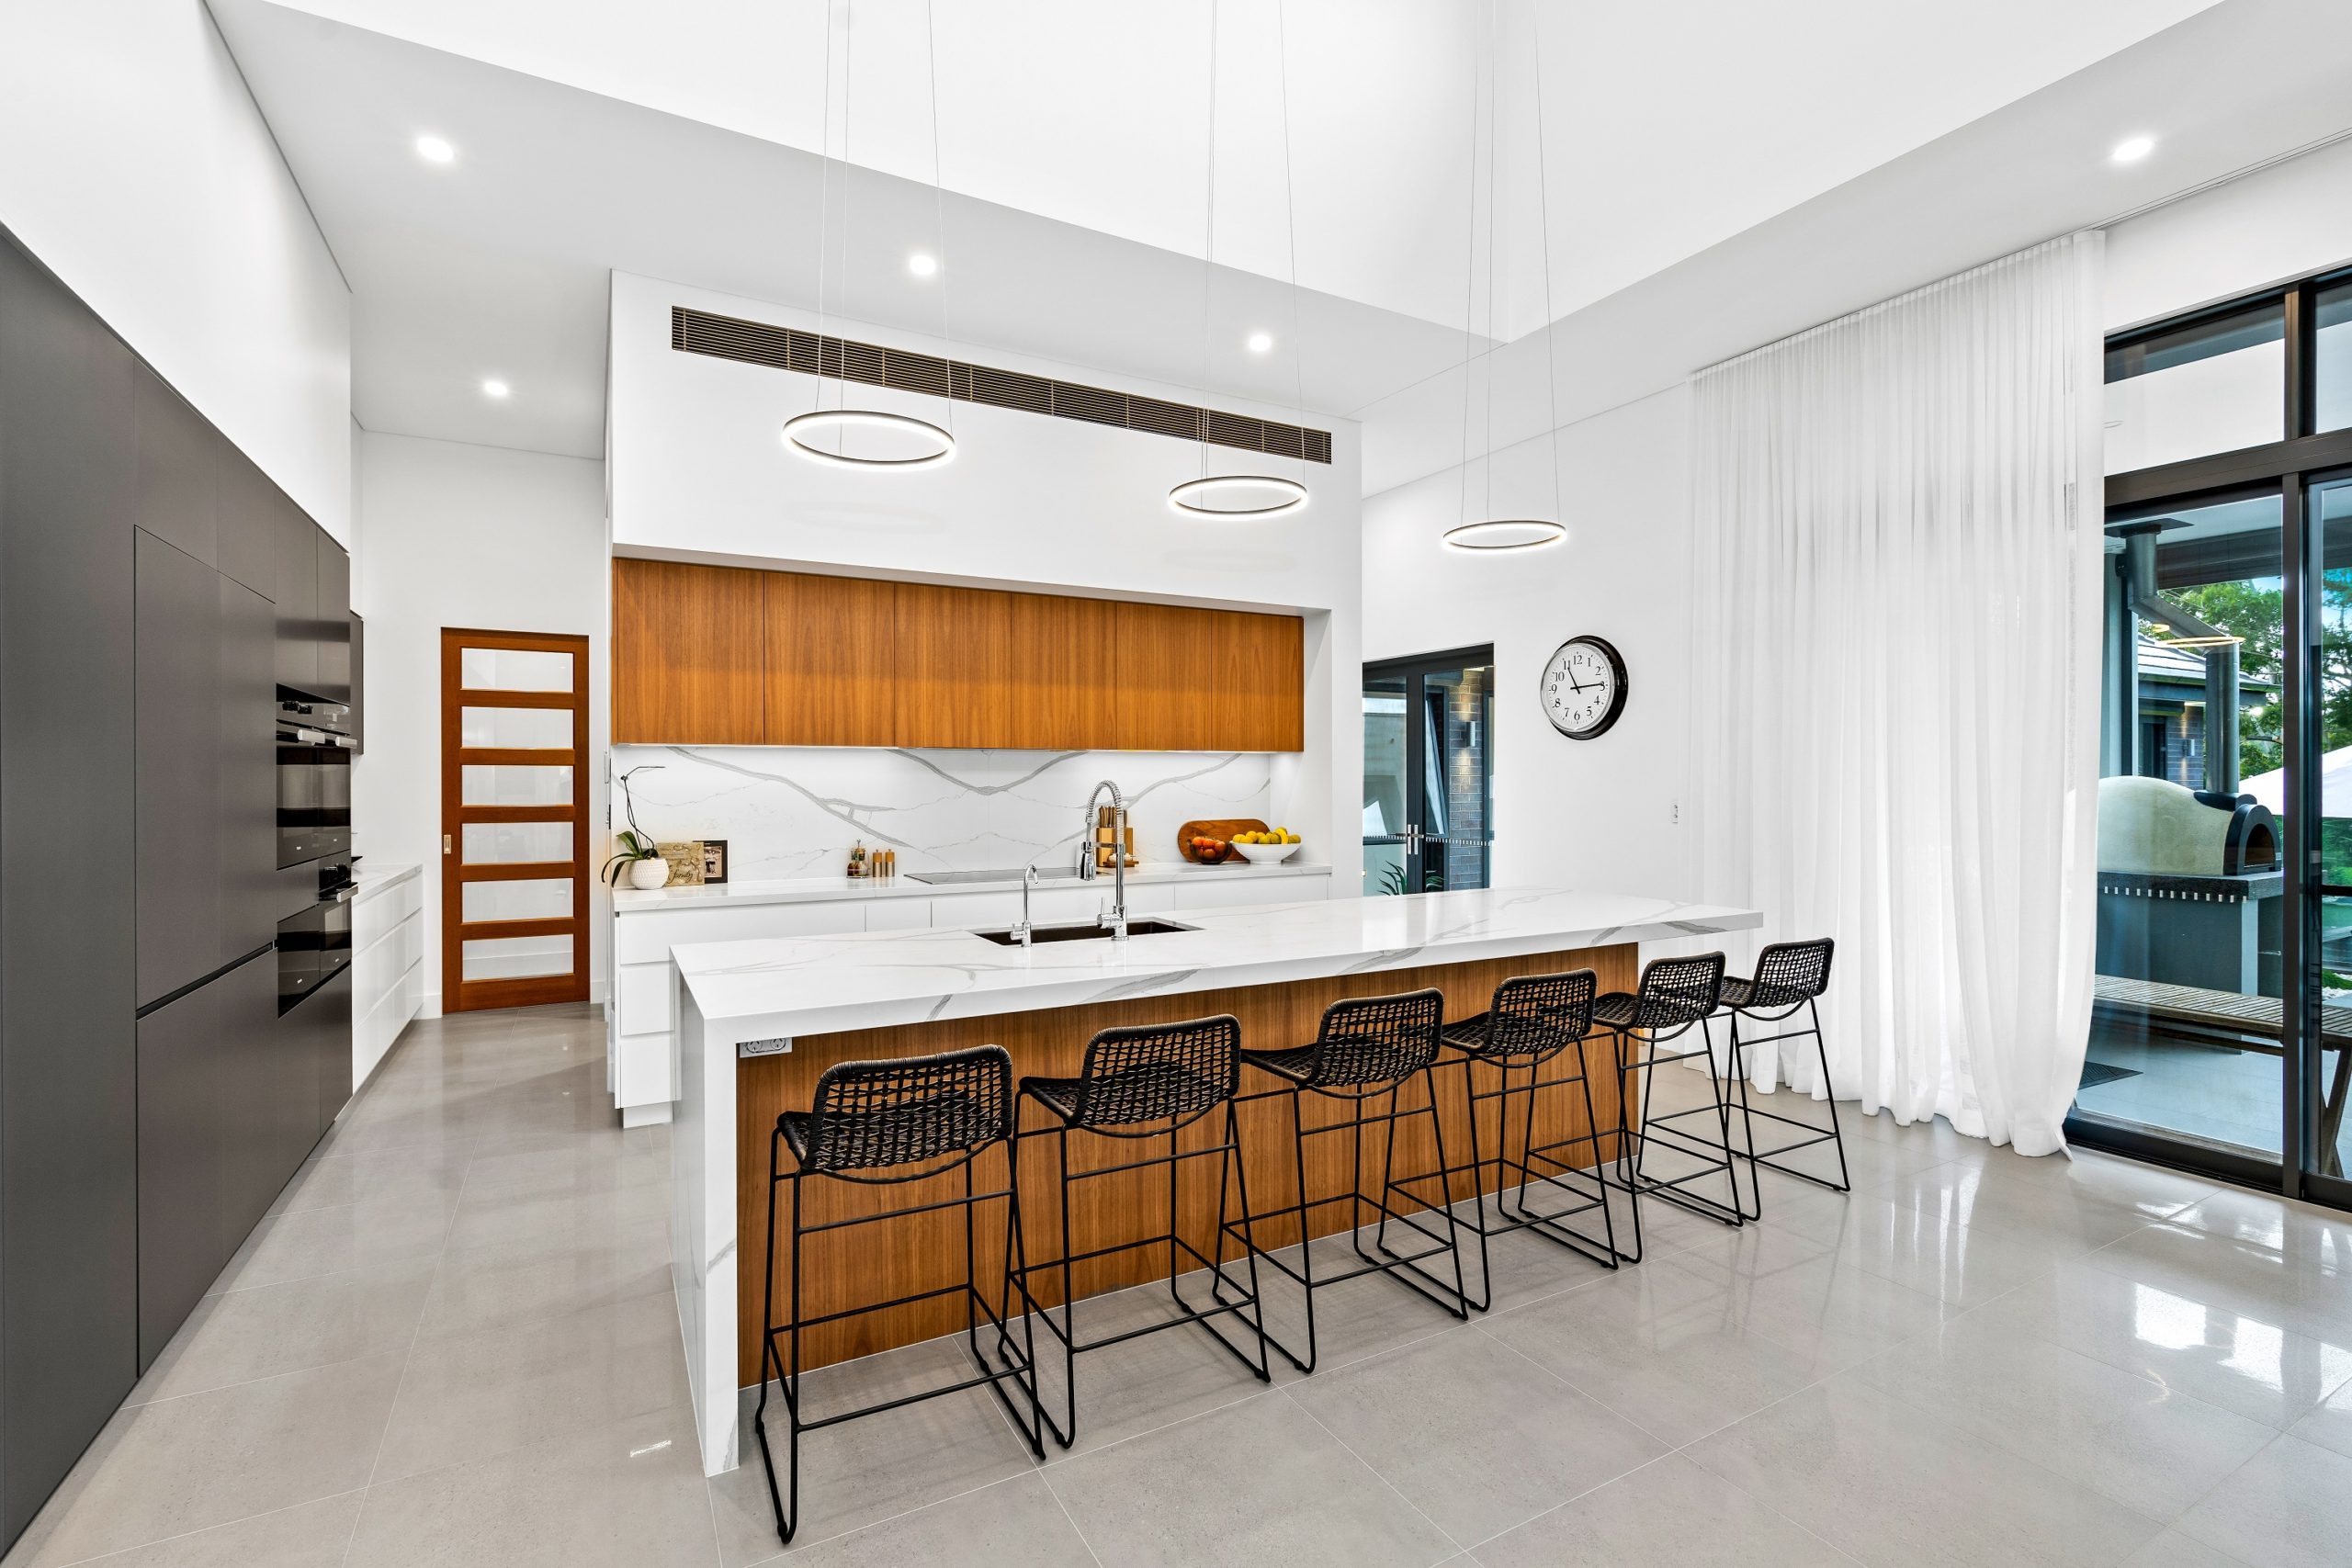 Best Modern Kitchen Designs Luxury Kitchen Renovations Cabinetry Huge Kitchen Showroom Kitchen Designers Indoor And Outdoor Alfresco Kitchens 30 Mins From Sydney Cbd